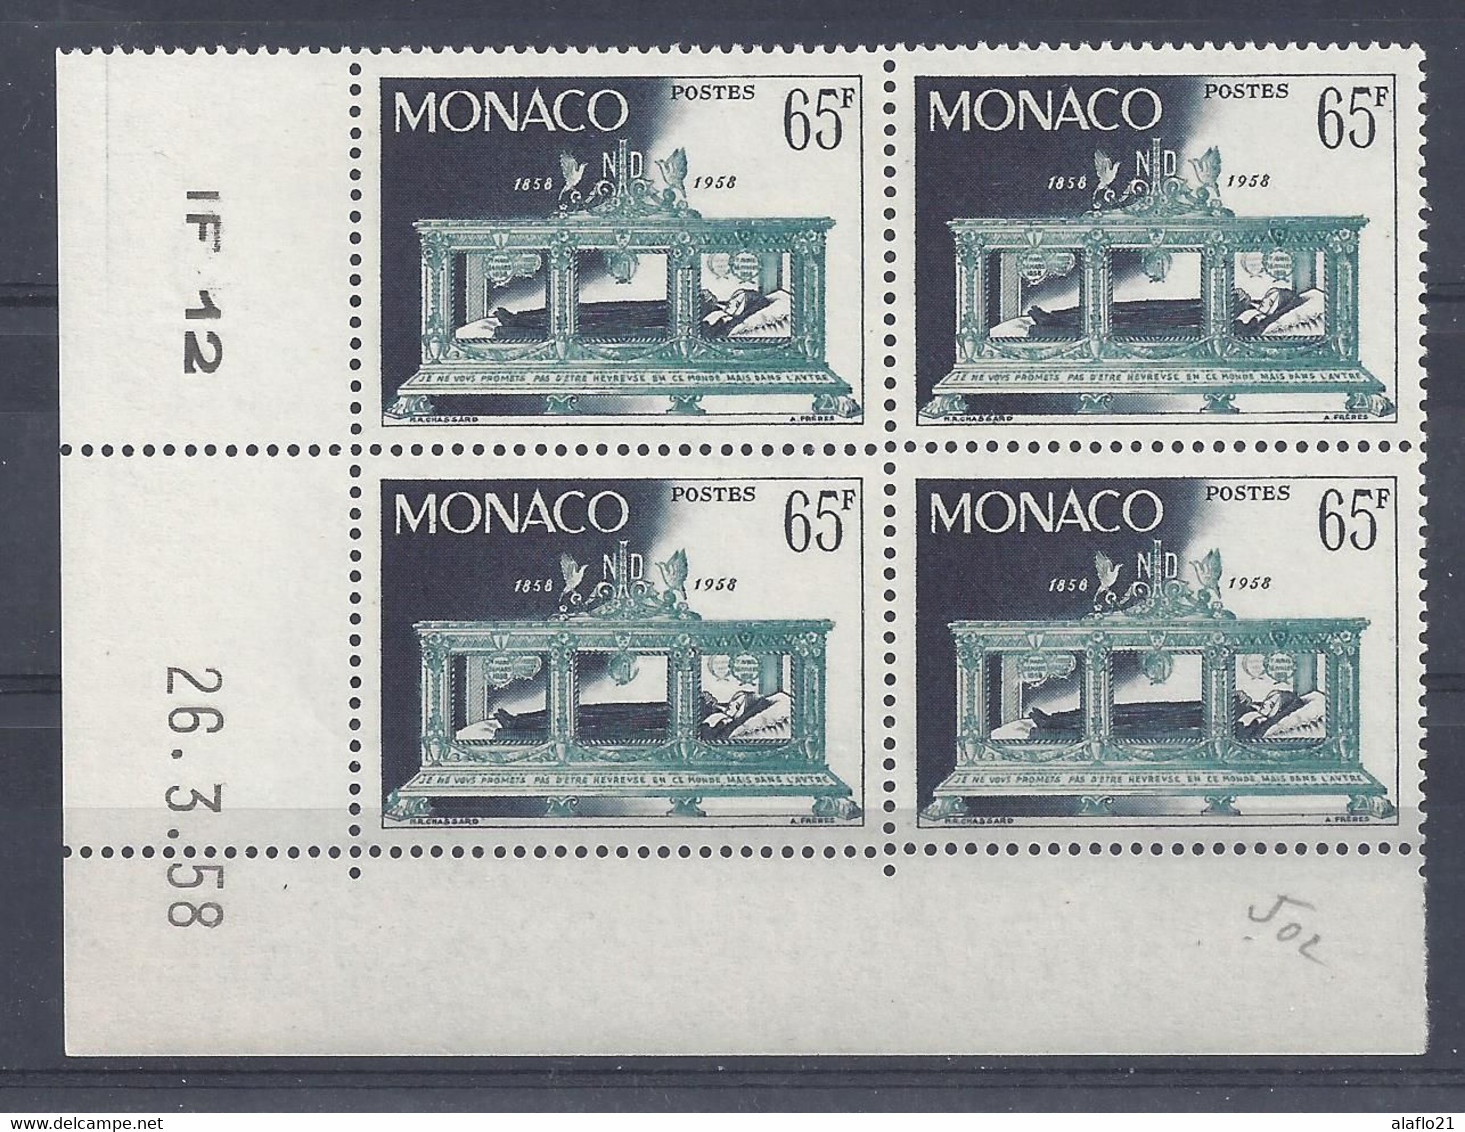 MONACO - N° 502 - APPARITIONS De LOURDES - Bloc De  COIN DATE - NEUF SANS CHARNIERE - 26/3/58 - Nuevos